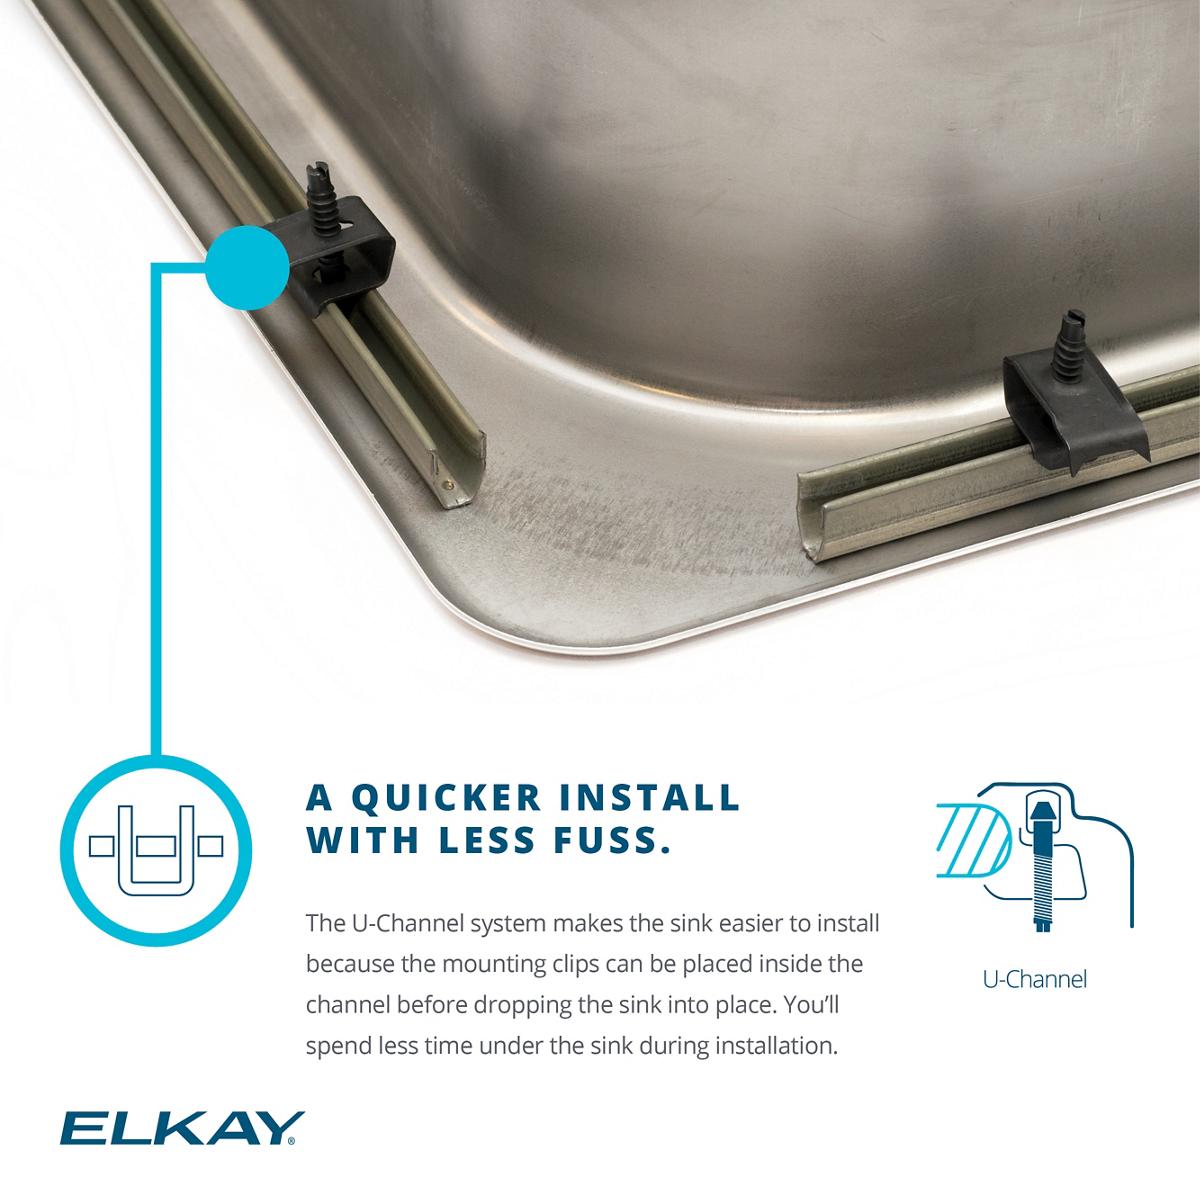 Elkay Lustertone Classic 33" x 22" x 7-5/8" Single Bowl Drop-in Stainless Steel Sink